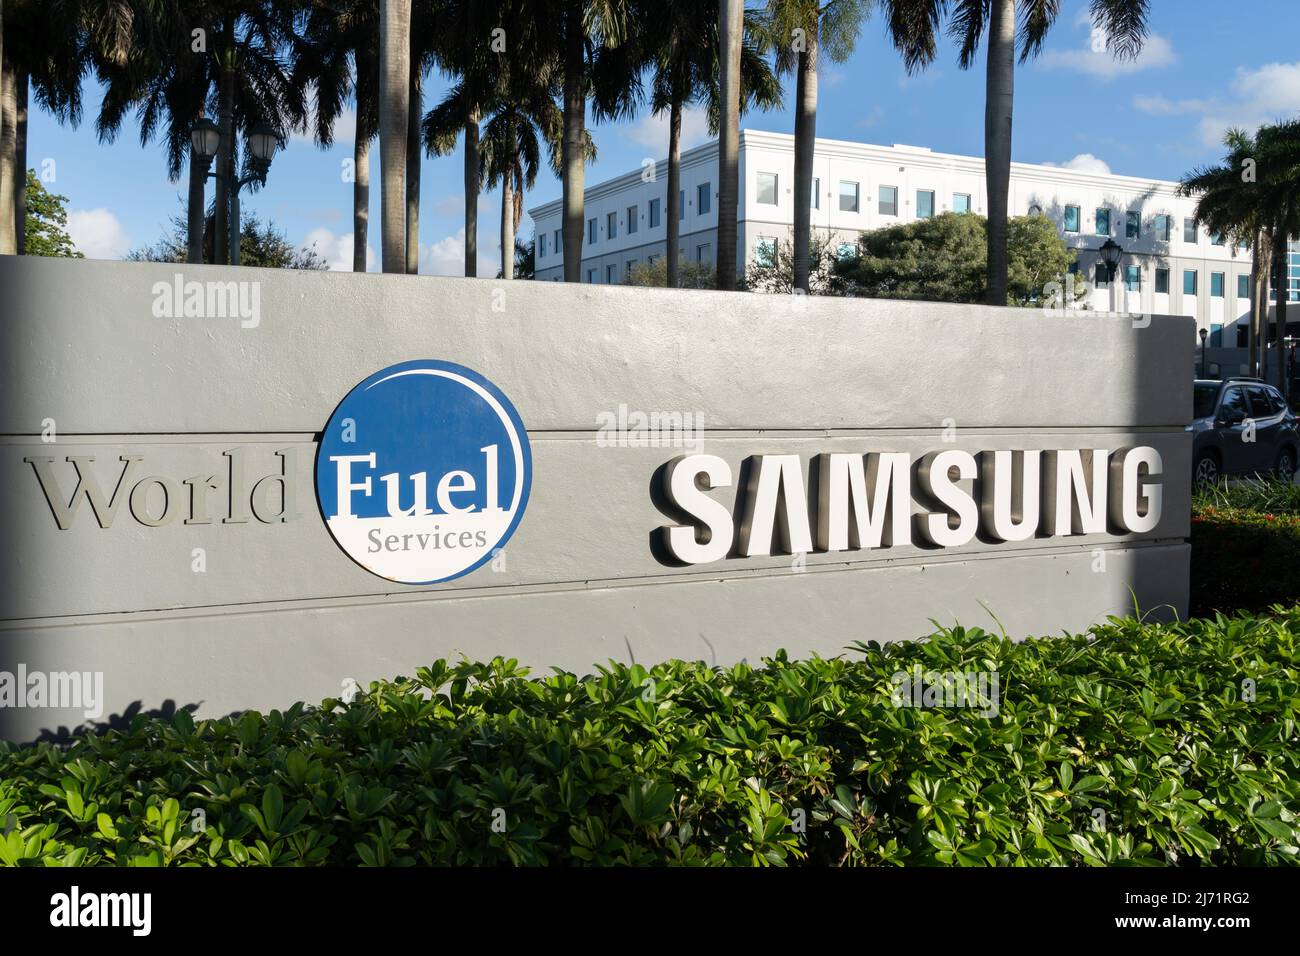 Doral, FL, USA - 1 janvier 2022 : panneau de sol de Samsung et World Fuel Services à l'entrée de leur bureau à Doral, FL, USA. Banque D'Images